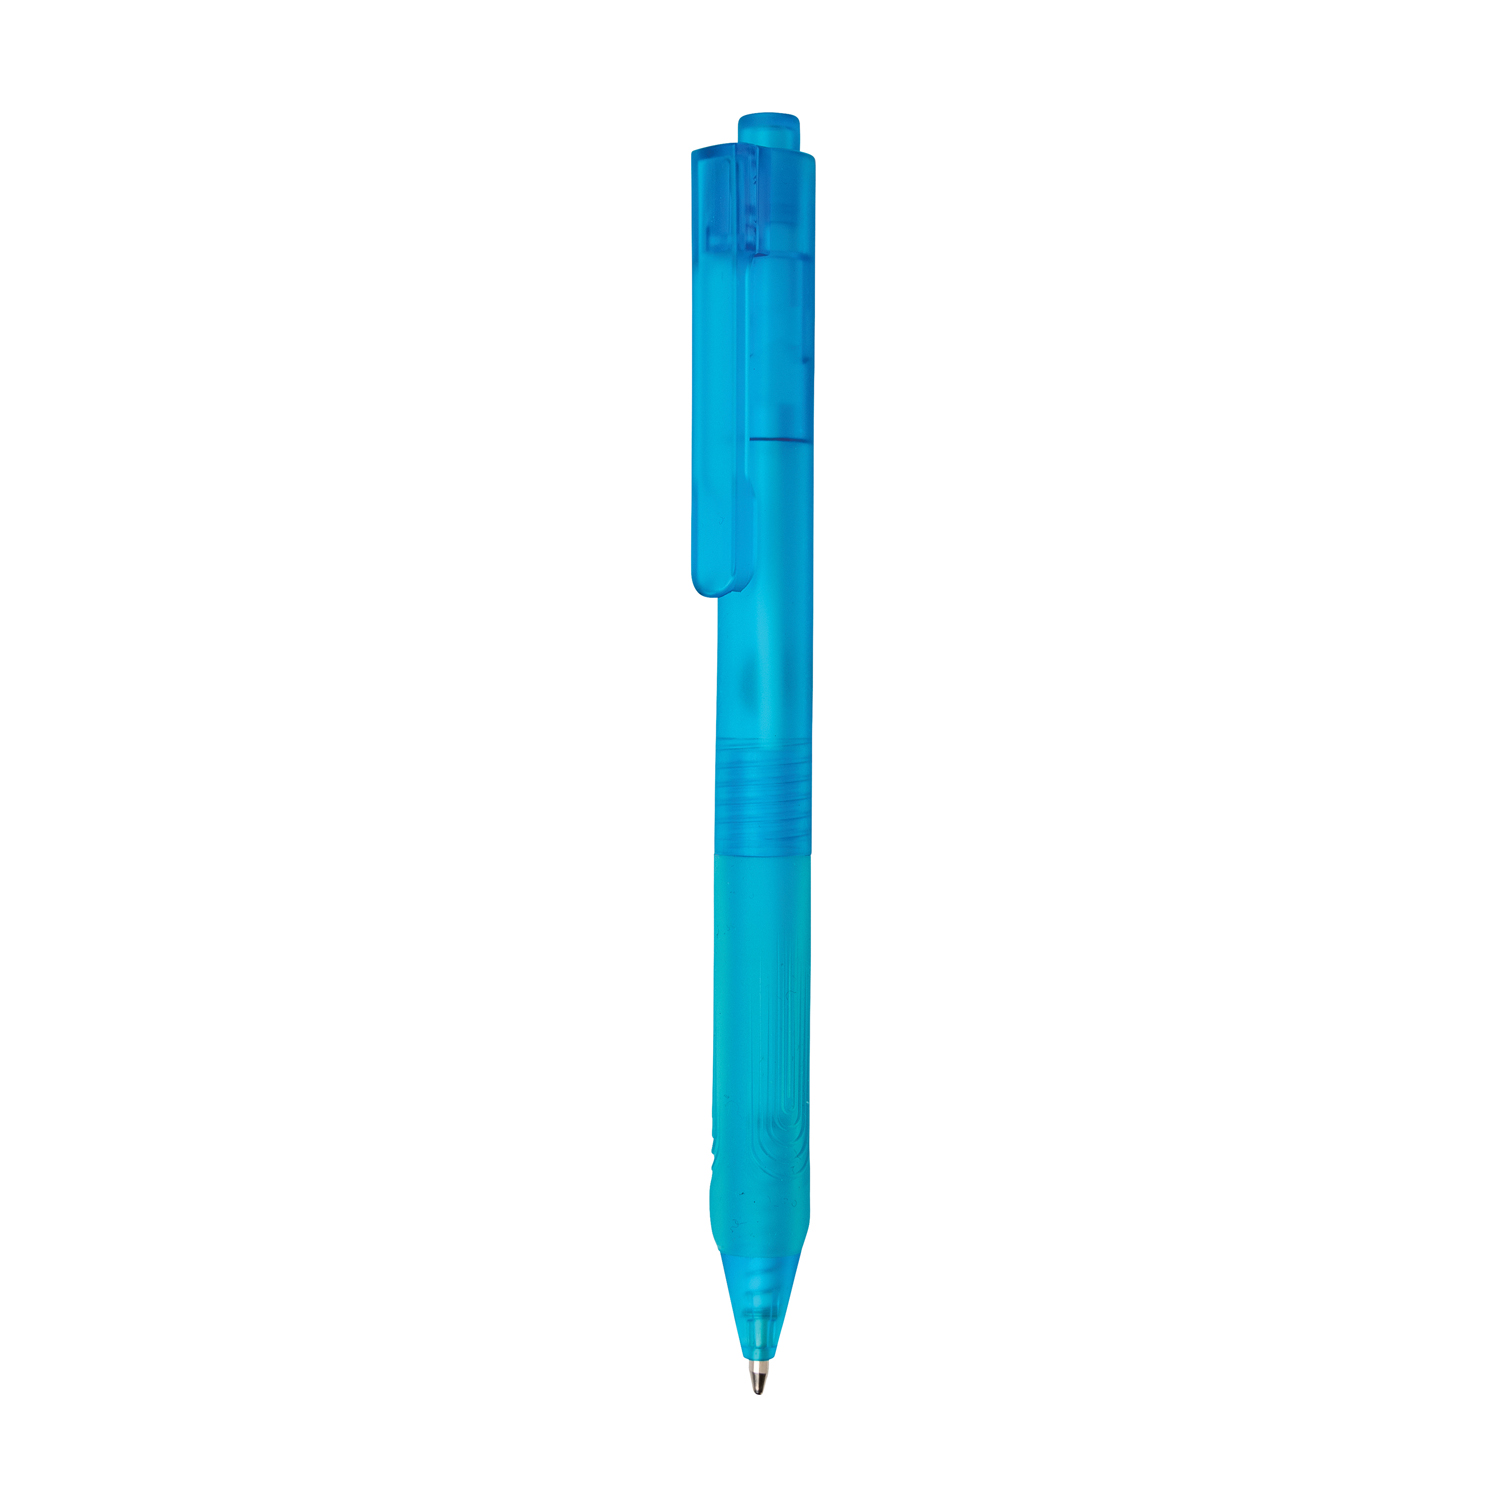 Артикул: XP610.795 — Ручка X9 с матовым корпусом и силиконовым грипом